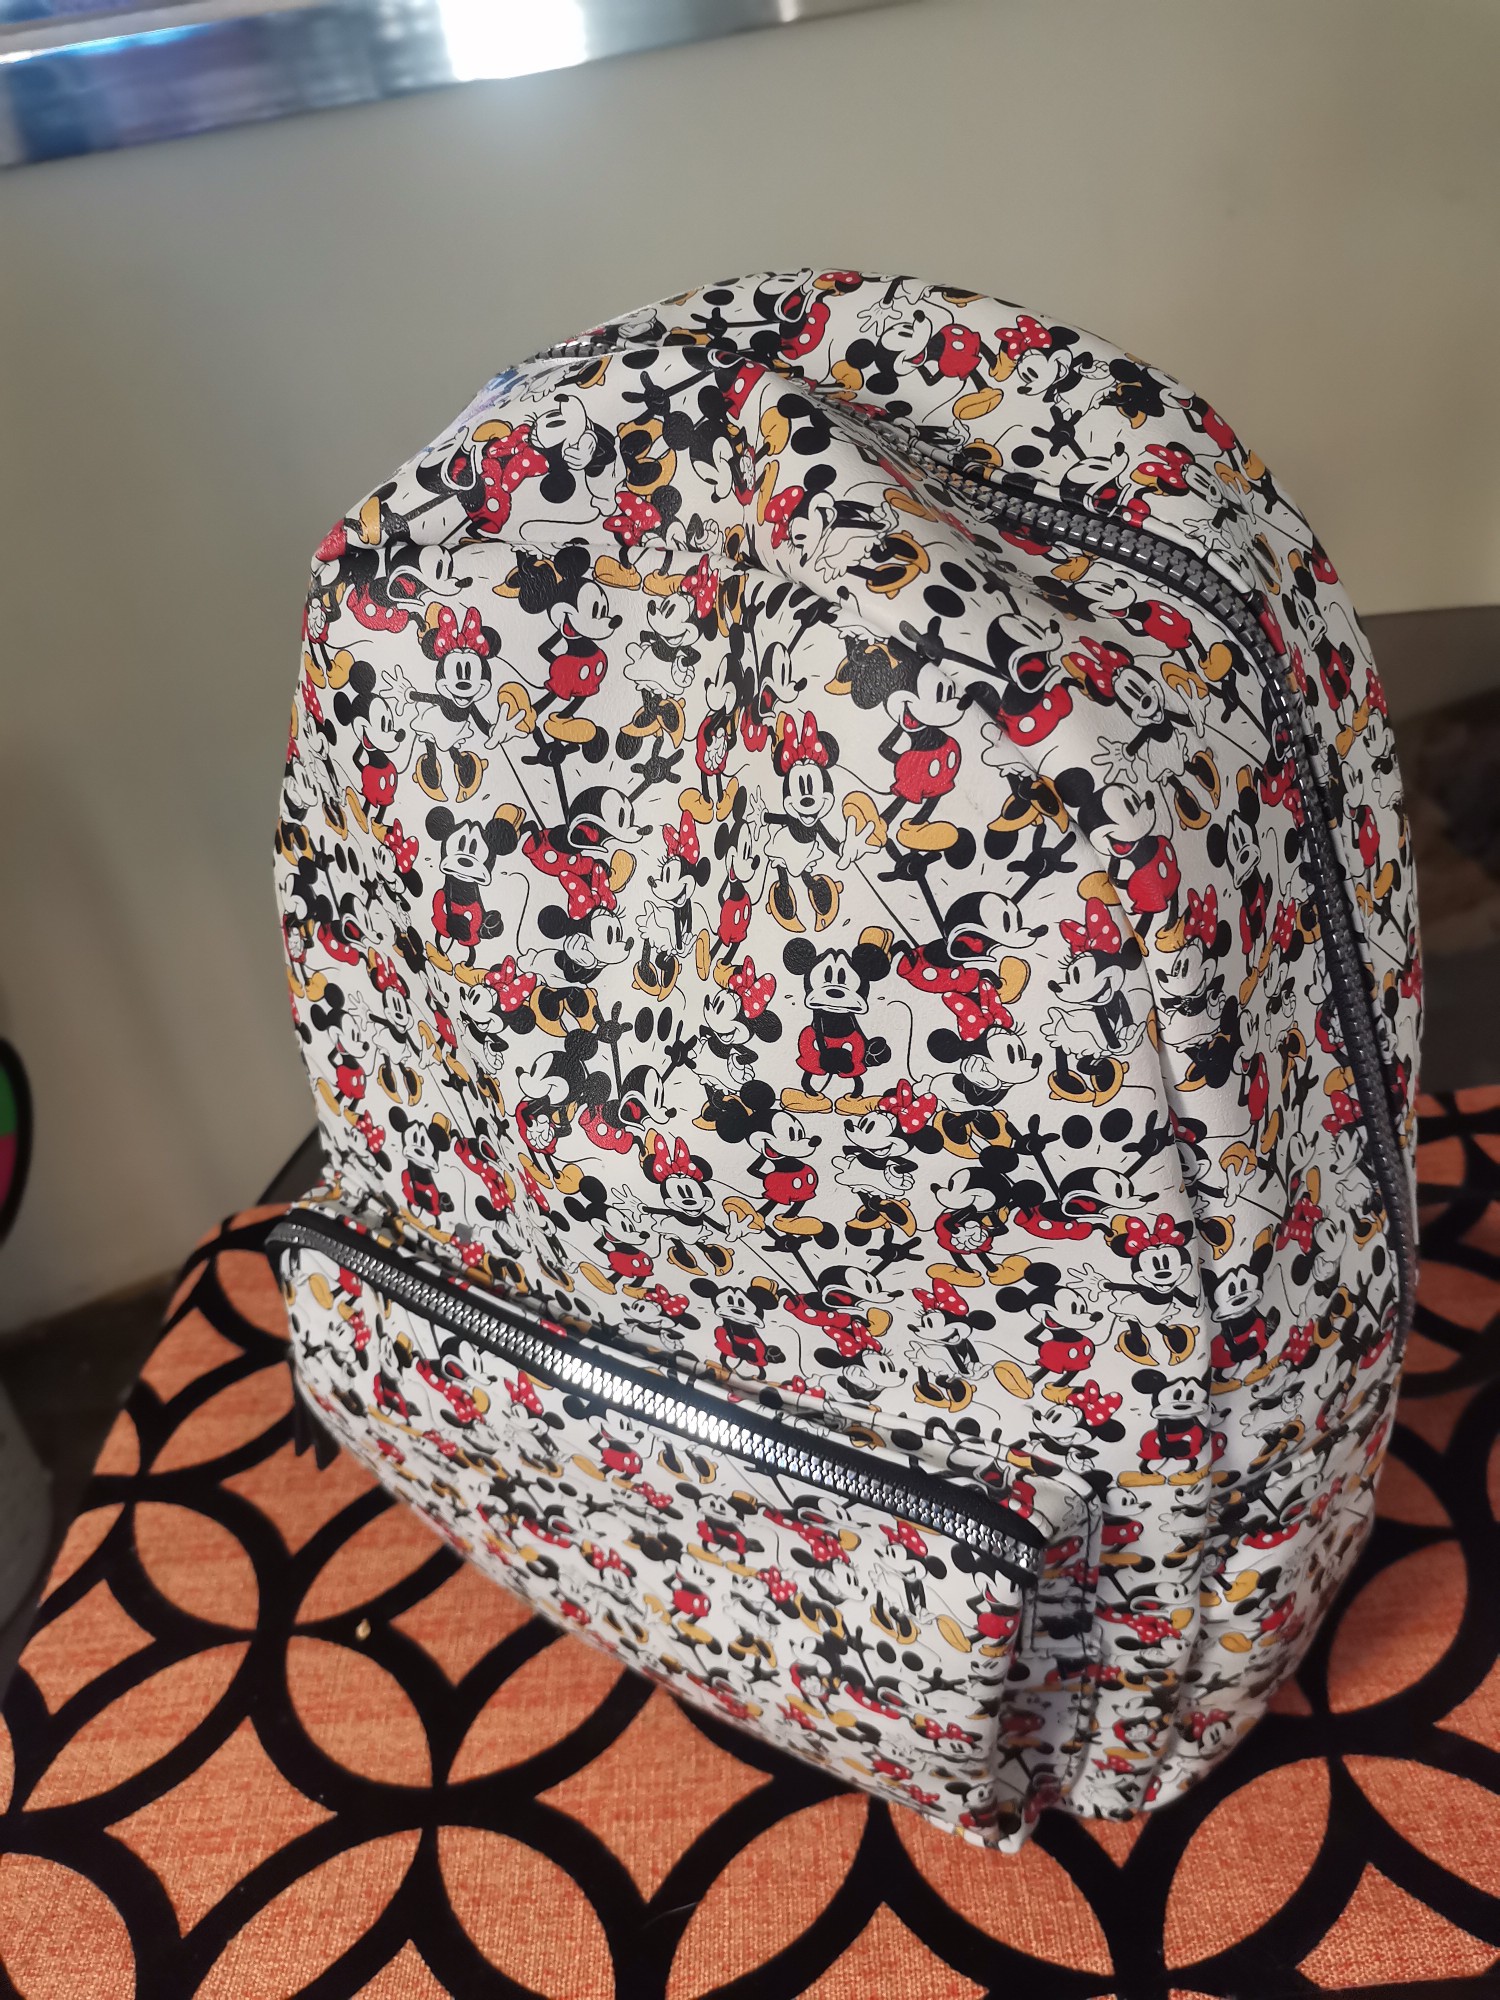 carteras y maletas - Mochila de Mickey Mouse 1